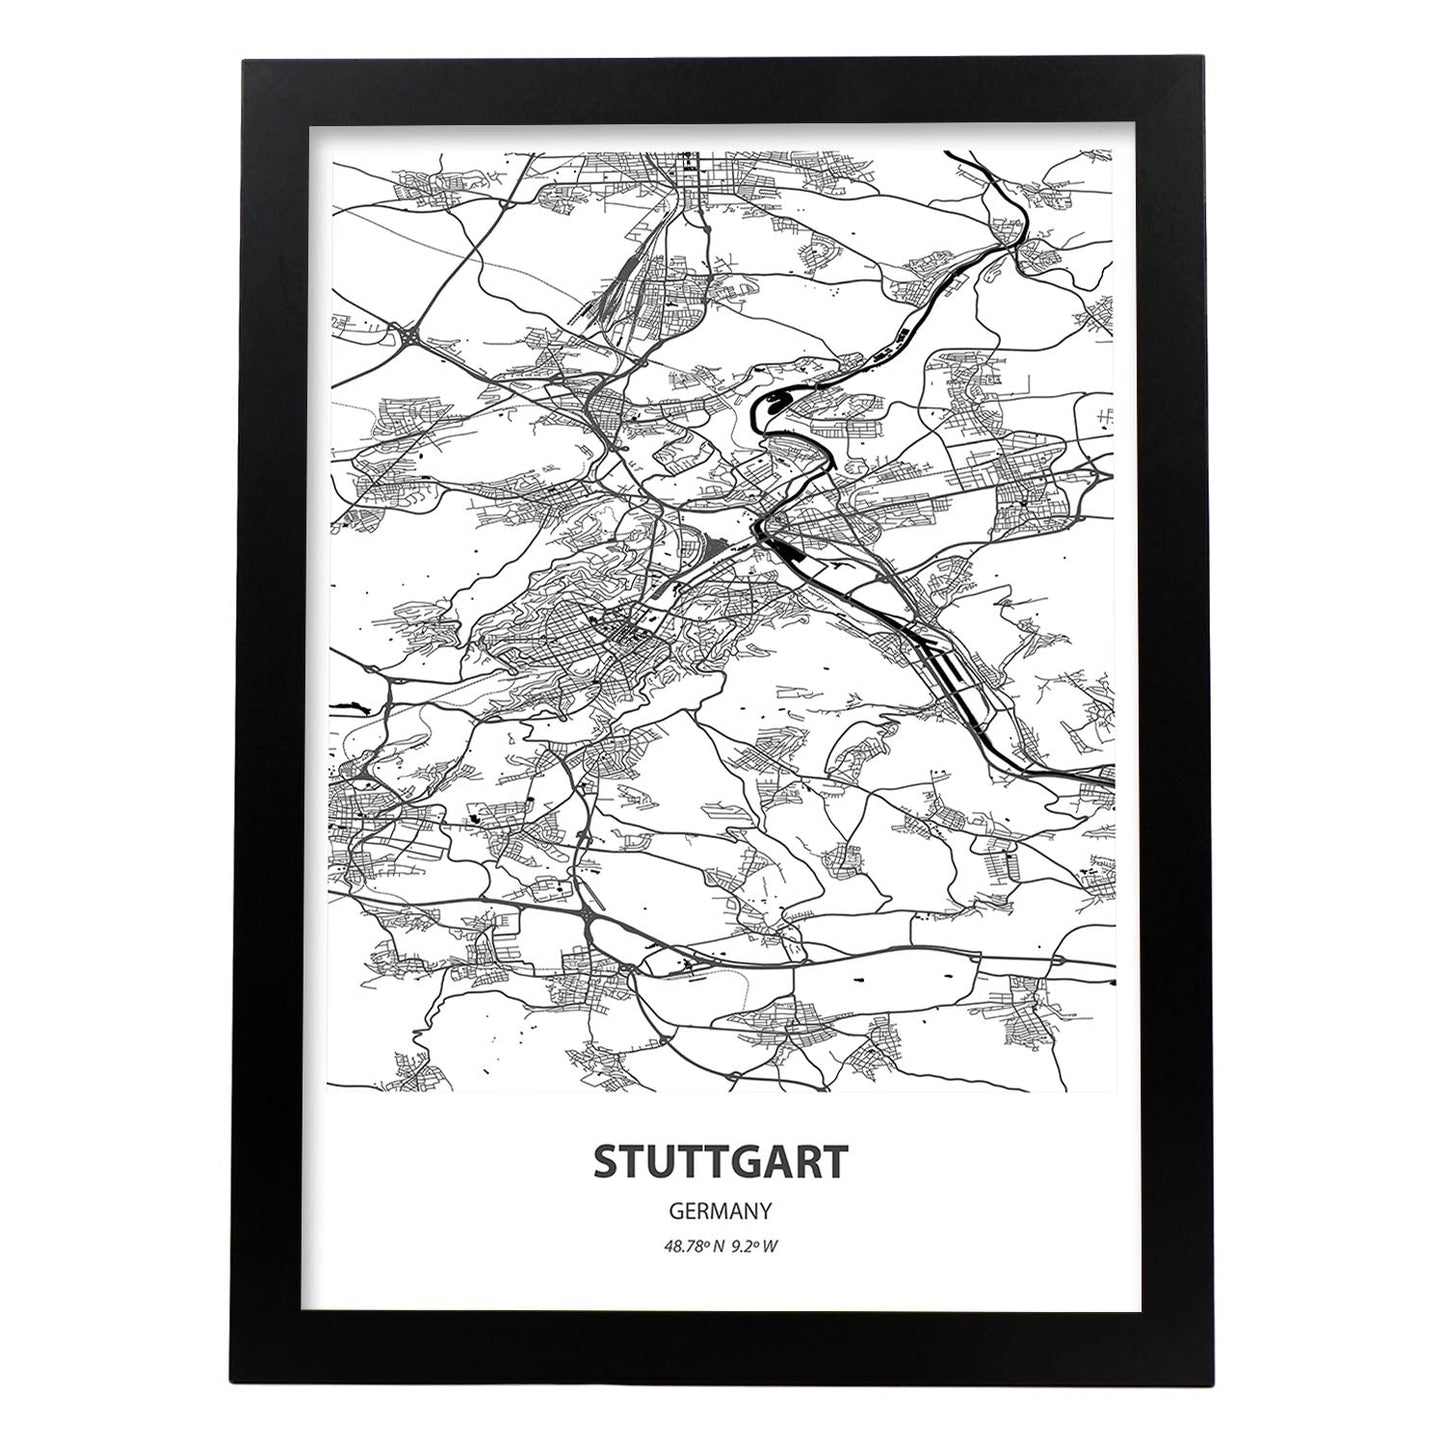 Poster con mapa de Stuttgart - Alemania. Láminas de ciudades de Alemania con mares y ríos en color negro.-Artwork-Nacnic-A3-Marco Negro-Nacnic Estudio SL